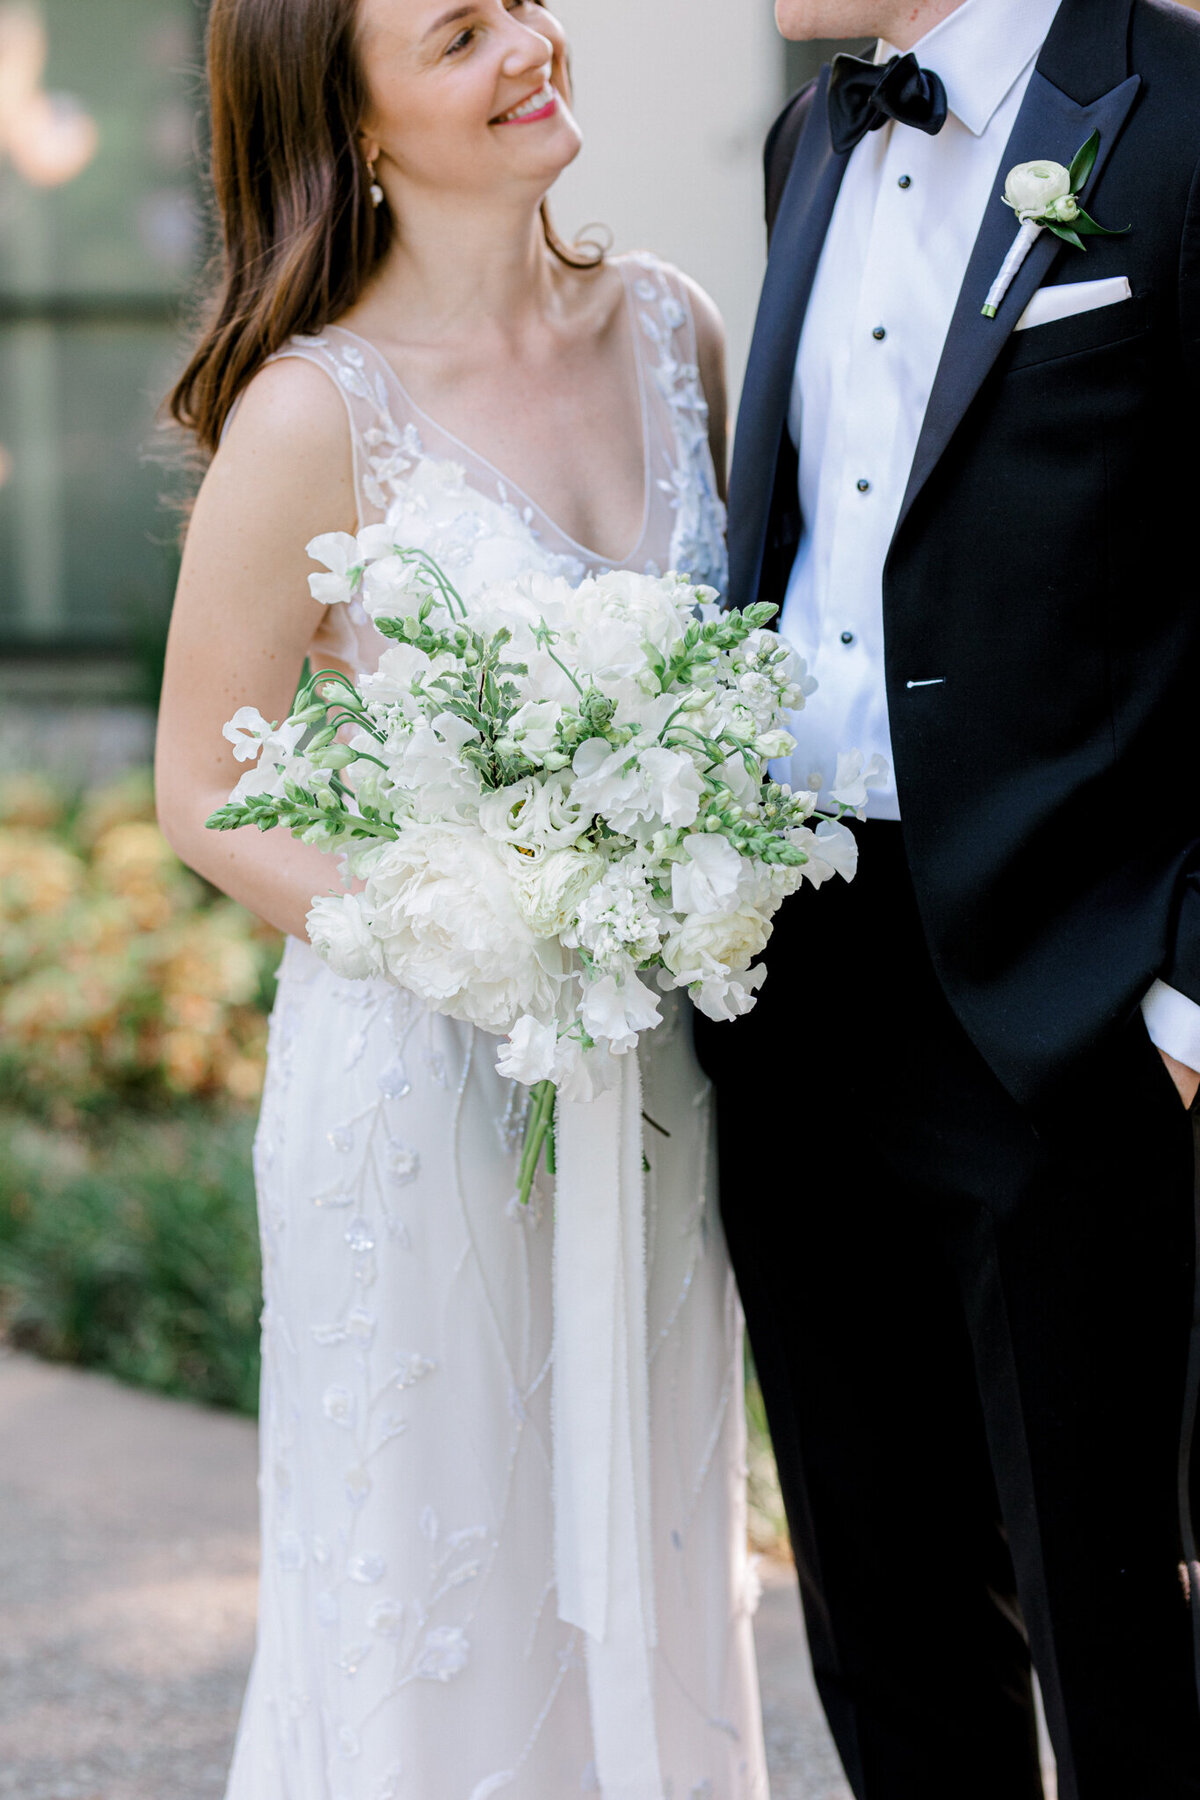 Gena & Matt's Wedding at the Dallas Arboretum | Dallas Wedding Photographer | Sami Kathryn Photography-101